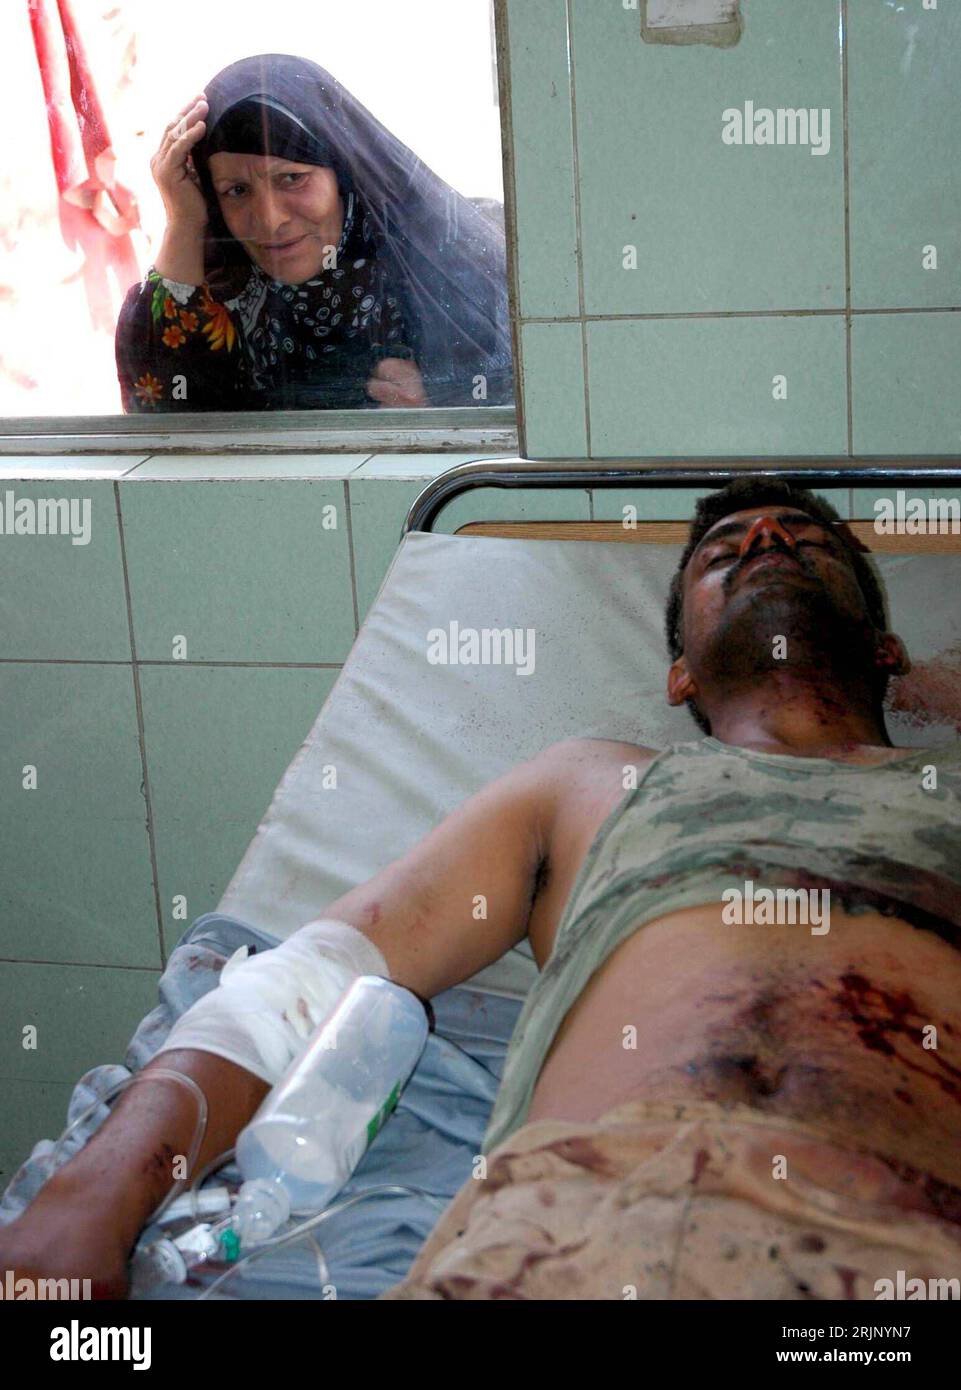 Bildnummer: 51038973 Datum: 20.07.2005 Copyright: imago/Xinhua Frau schaut durch ein Fenster eines Krankenhauses auf einen überlebenden Soldaten eines Bombenanschlages in Bagdad - PUBLICATIONxNOTxINxCHN, Personen; 2005, Bagdad, Krankenhäuser, verwundete, verletzt, Verletzter, Verletzte, Opfer, Verletzung, Verletzungen, schauen, schauend, Überlebender, Überlebende, Anschlag, Anschläge, Attentat, Attentate, terrore, Terrorismus, Selbstmordanschlag, Selbstmordanschläge, Terroranschlag, Terroranschläge, Bombenattentat, Bombenattentate, Bombenanschlag; hoch, Kbdig, Gruppenbild, Irak / verwundet, Foto Stock